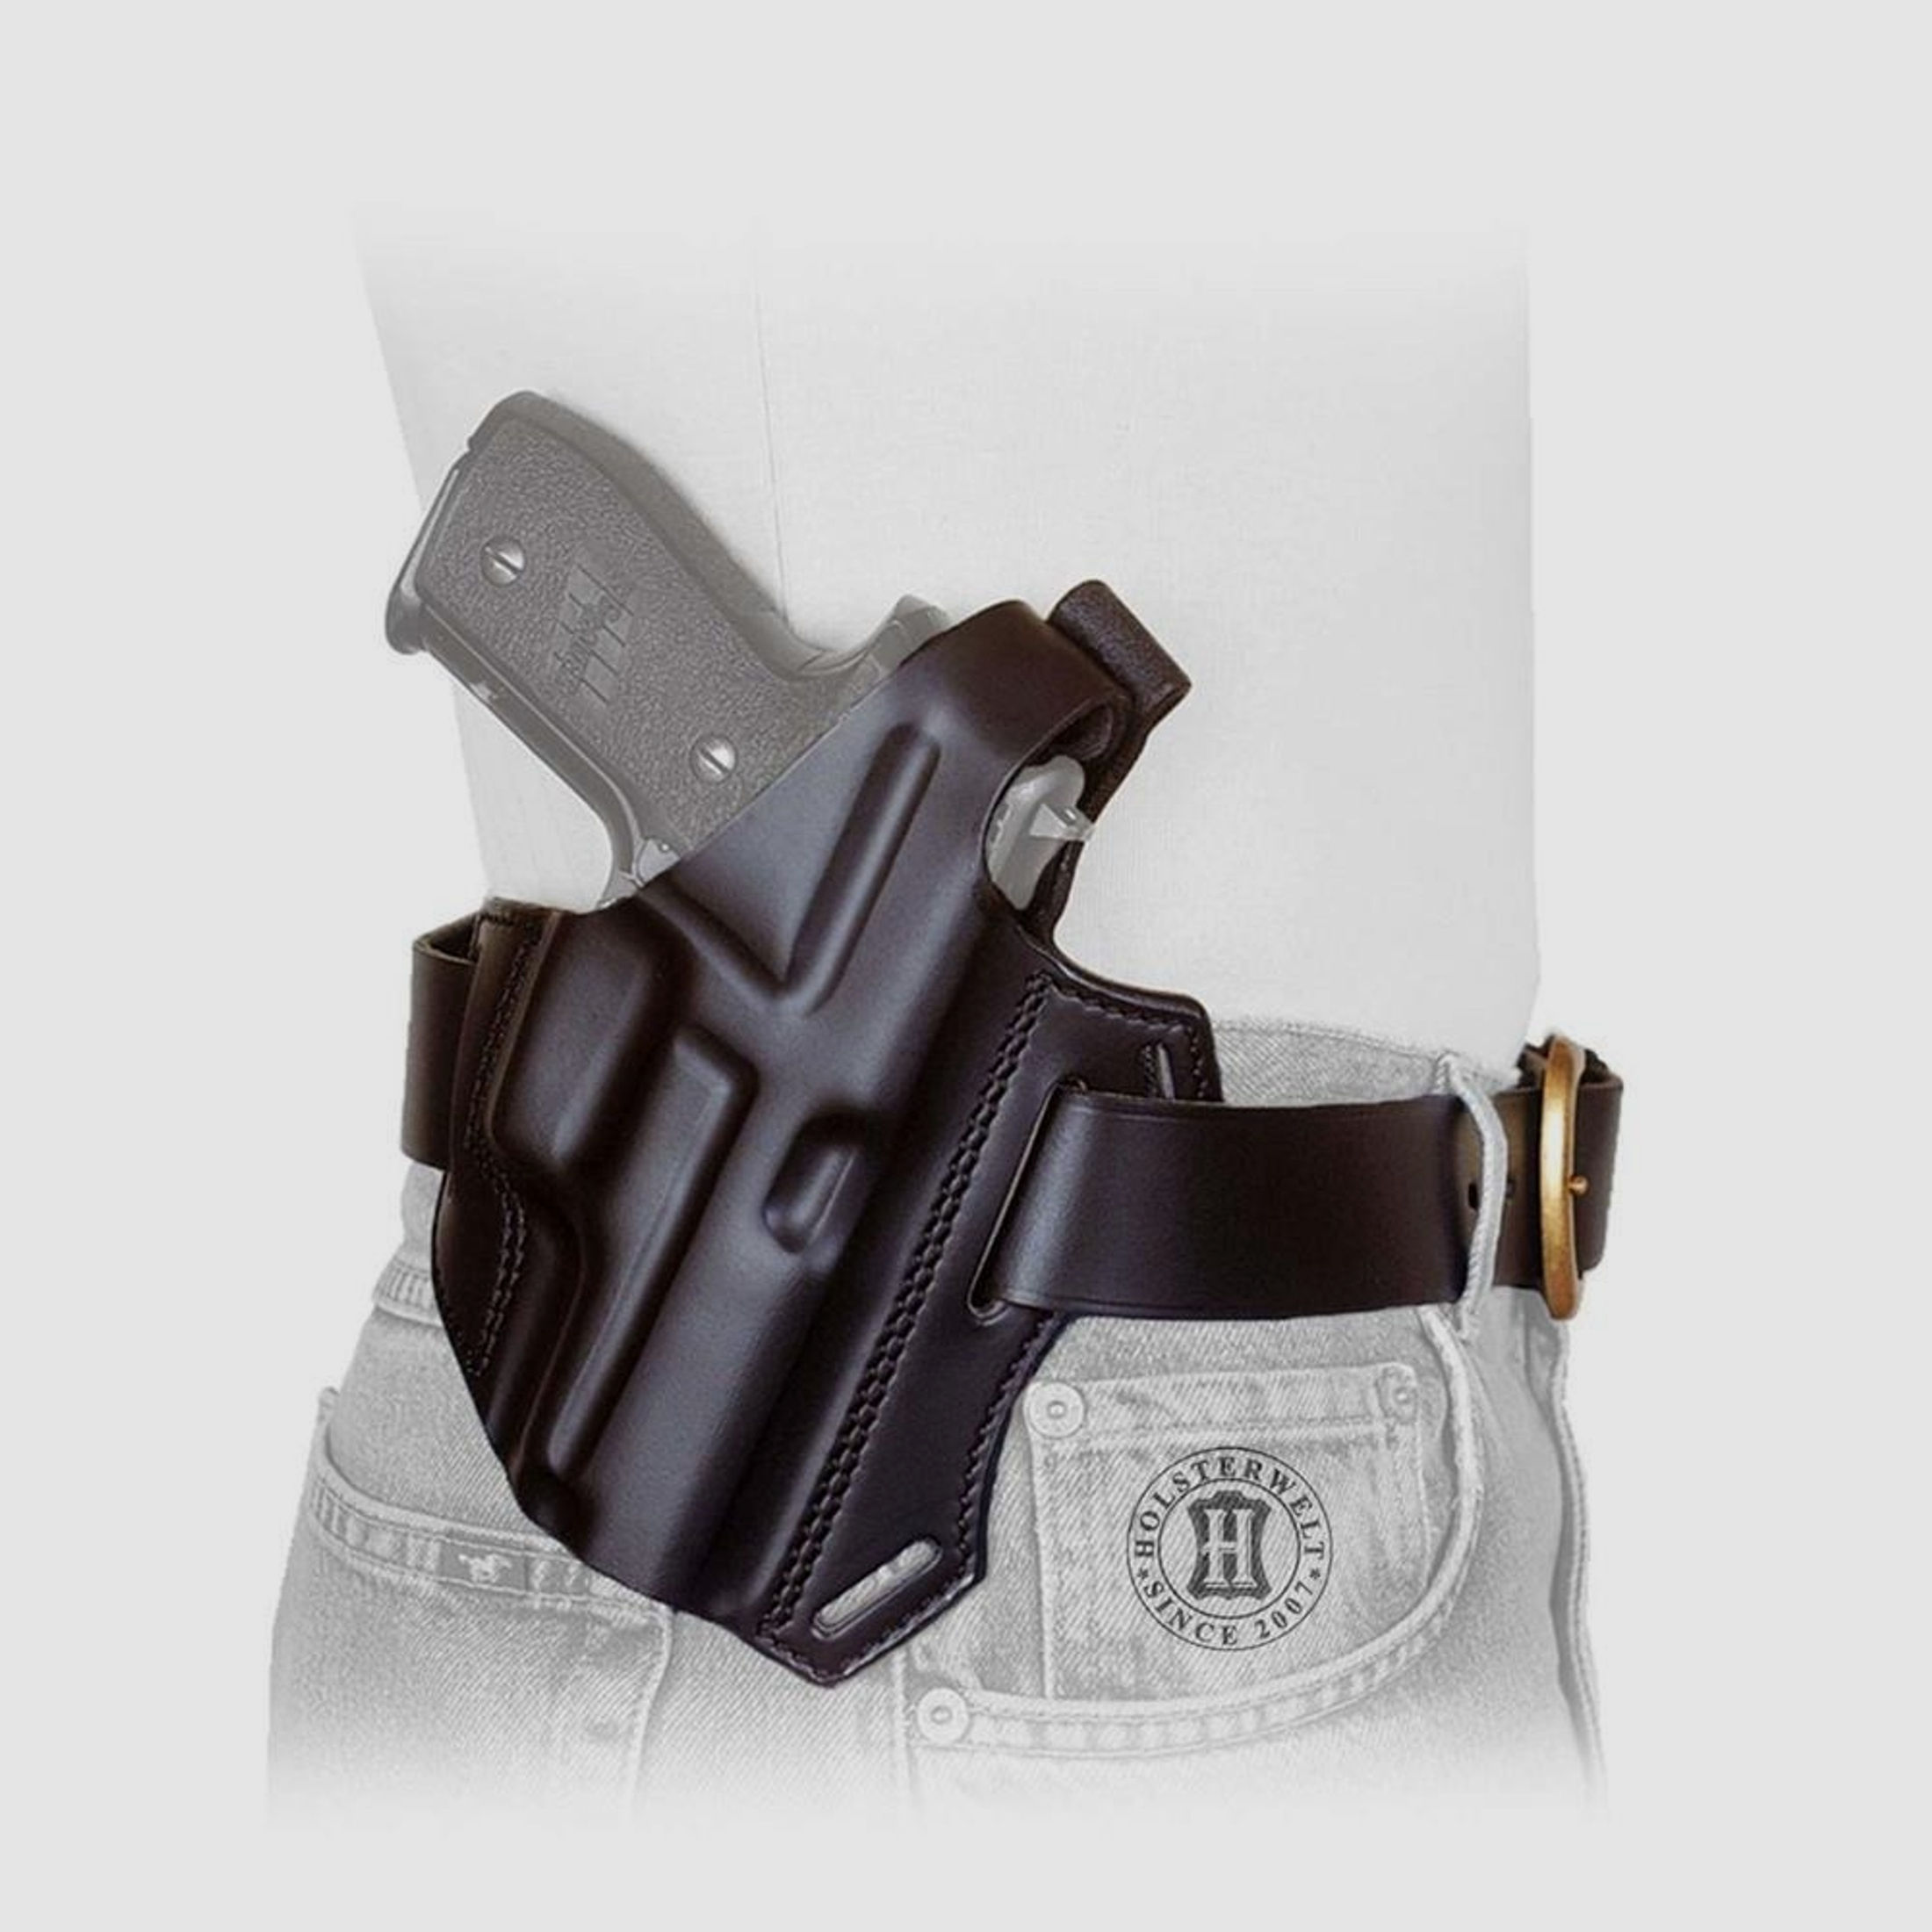 Gürtelholster / Schulterholster MULTI VARIO Glock 26/27/39/28/33-Braun-Rechtshänder